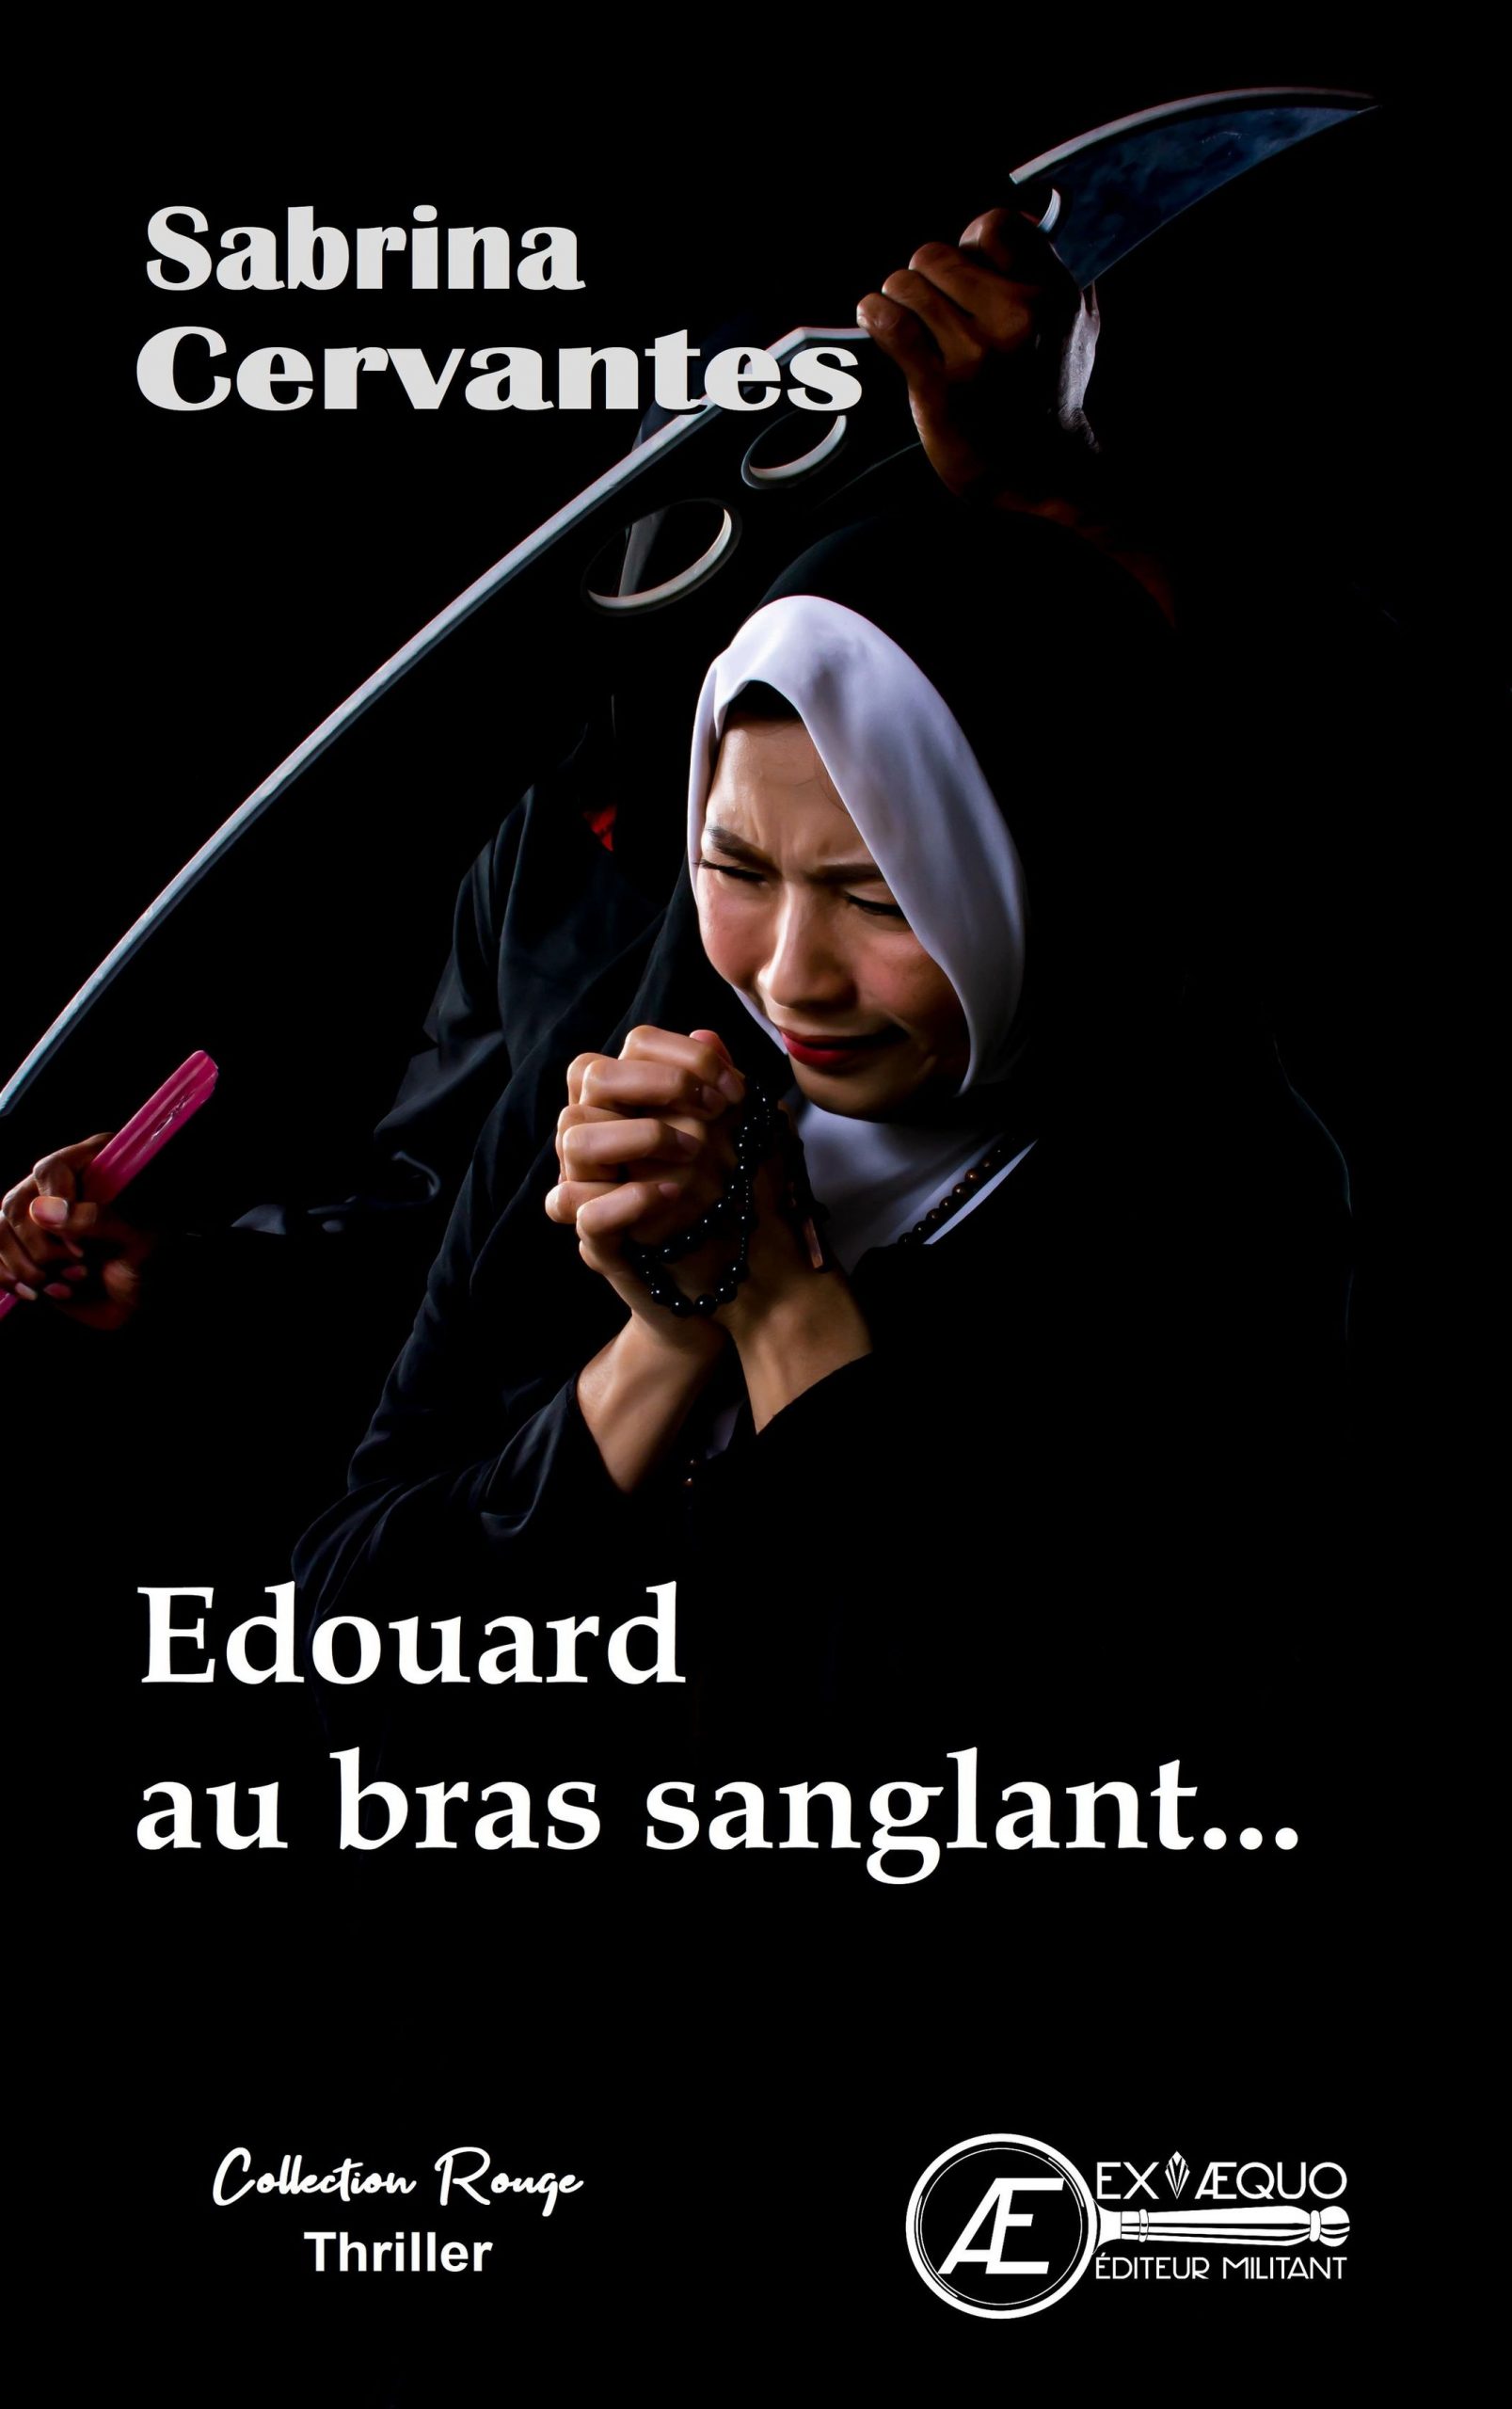 You are currently viewing Edouard au bras sanglant, de Sabrina Cervantes